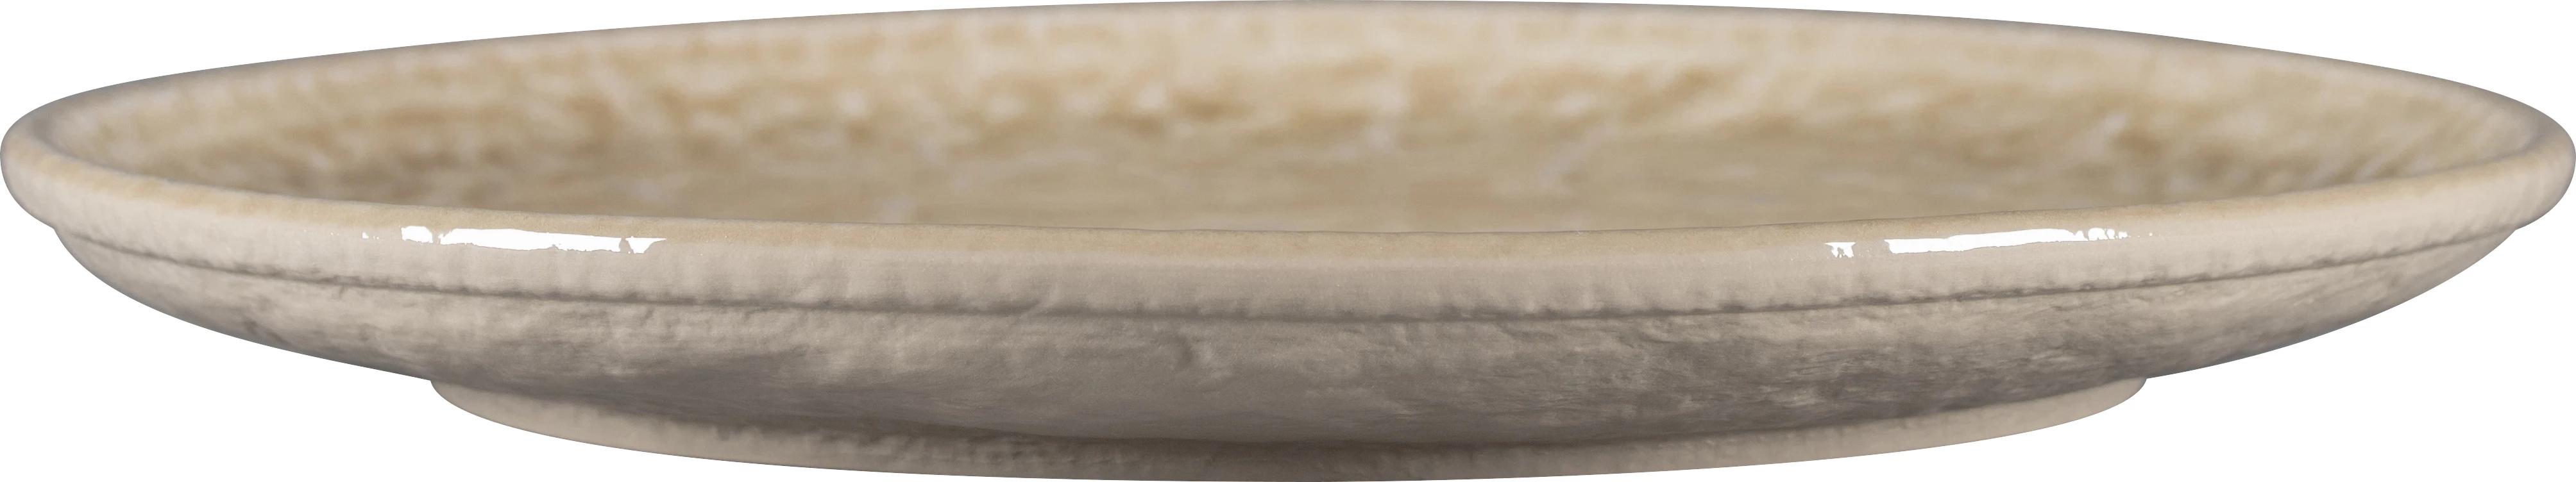 RAK Krush flad tallerken uden fane, sand, ø27,9 cm